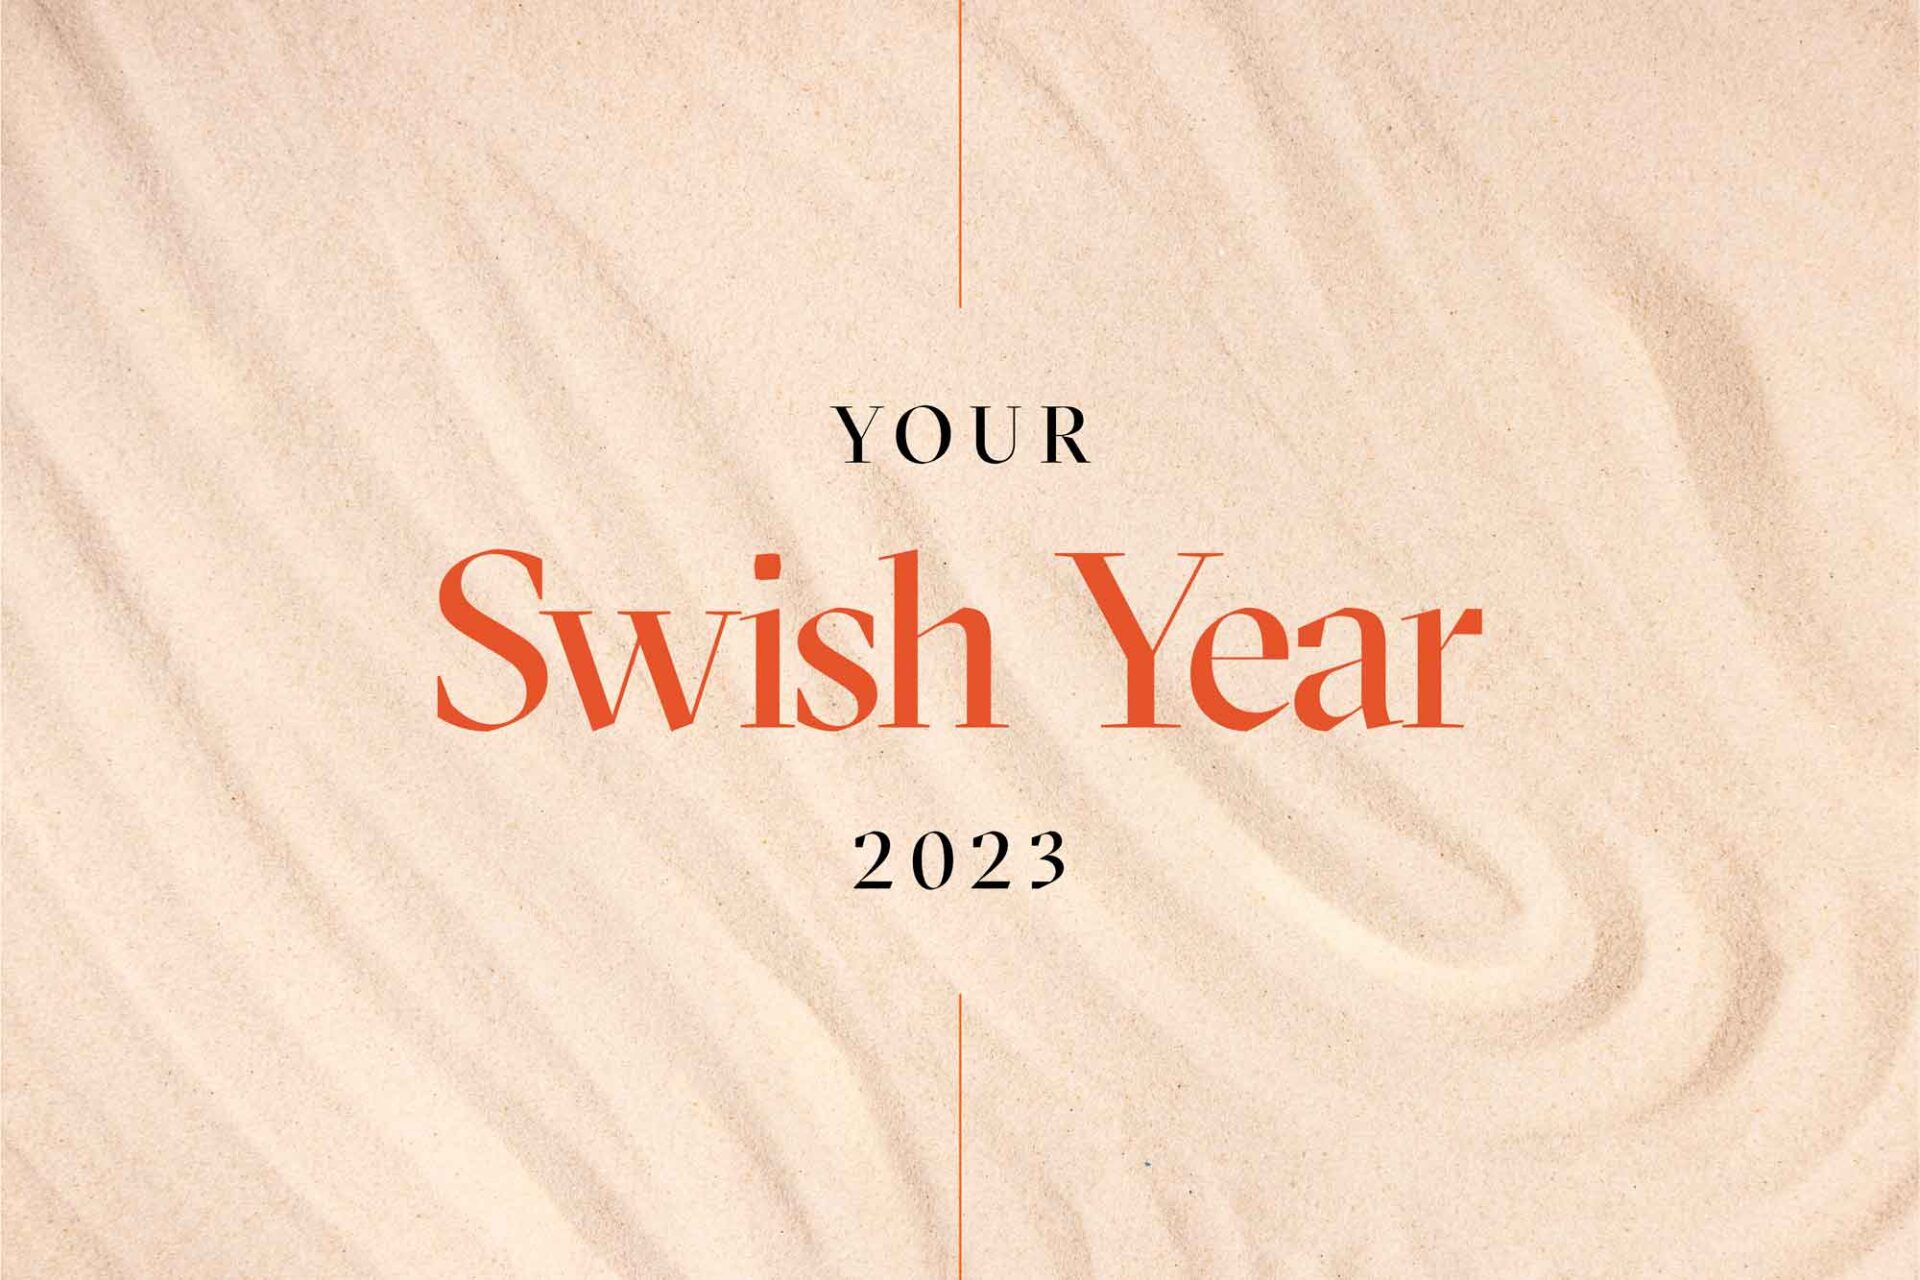 Your Swish Year 2023